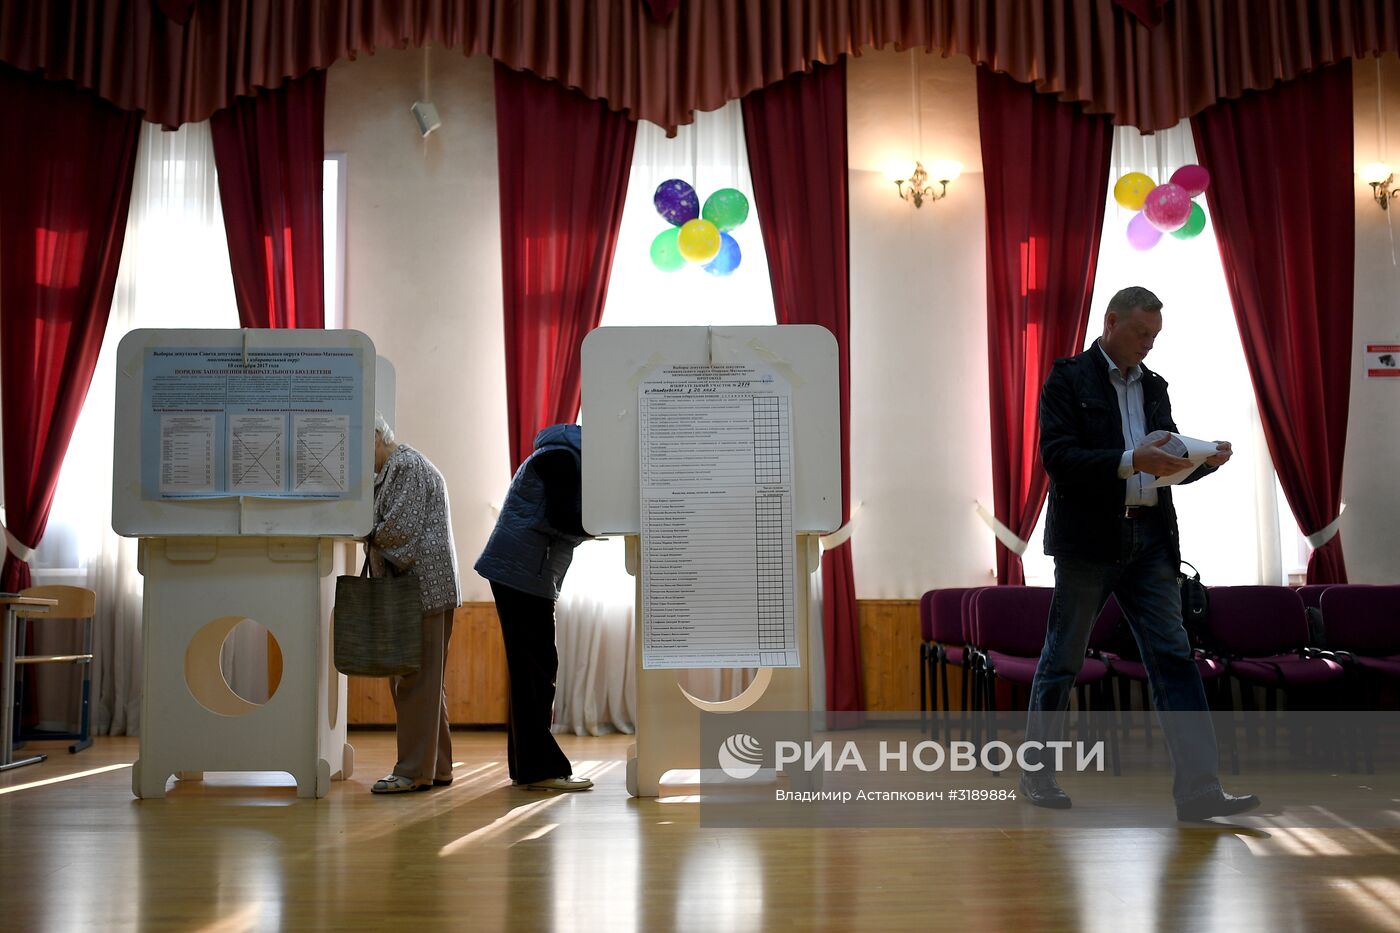 Единый день голосования в Москве